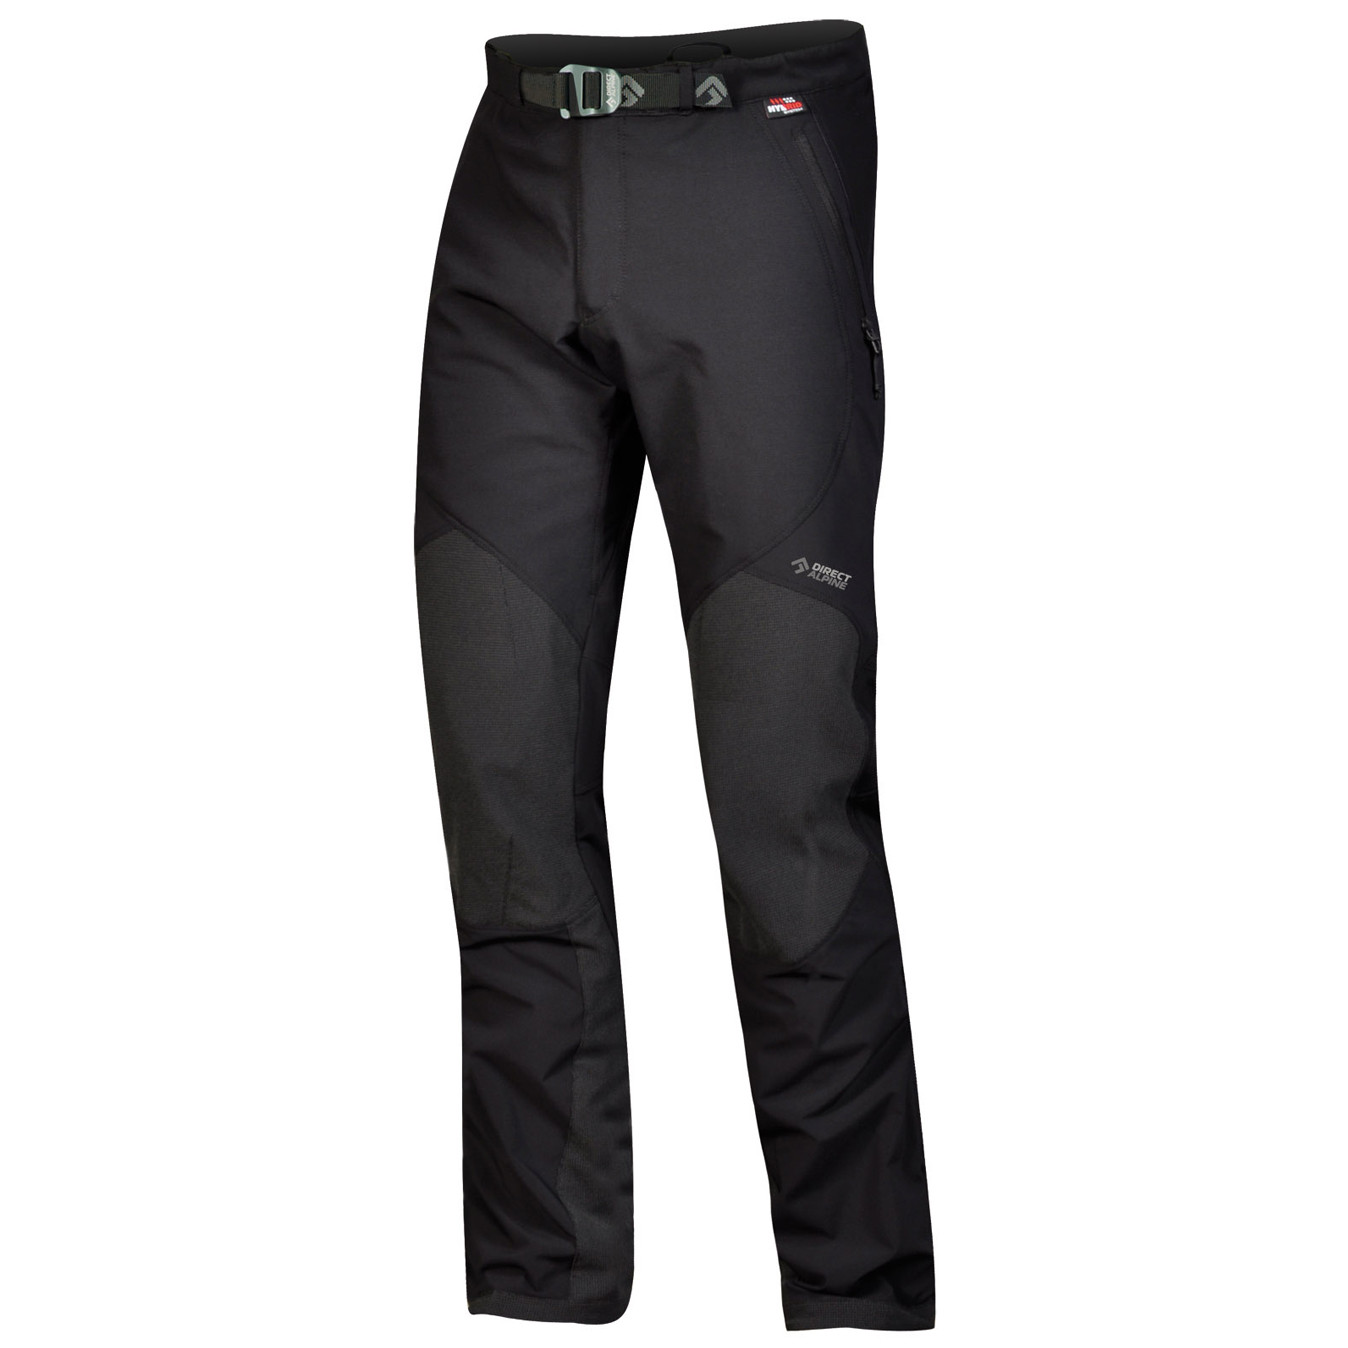 Pánské kalhoty Direct Alpine Cascade Plus Velikost: M / Délka kalhot: regular / Barva: černá/šedá